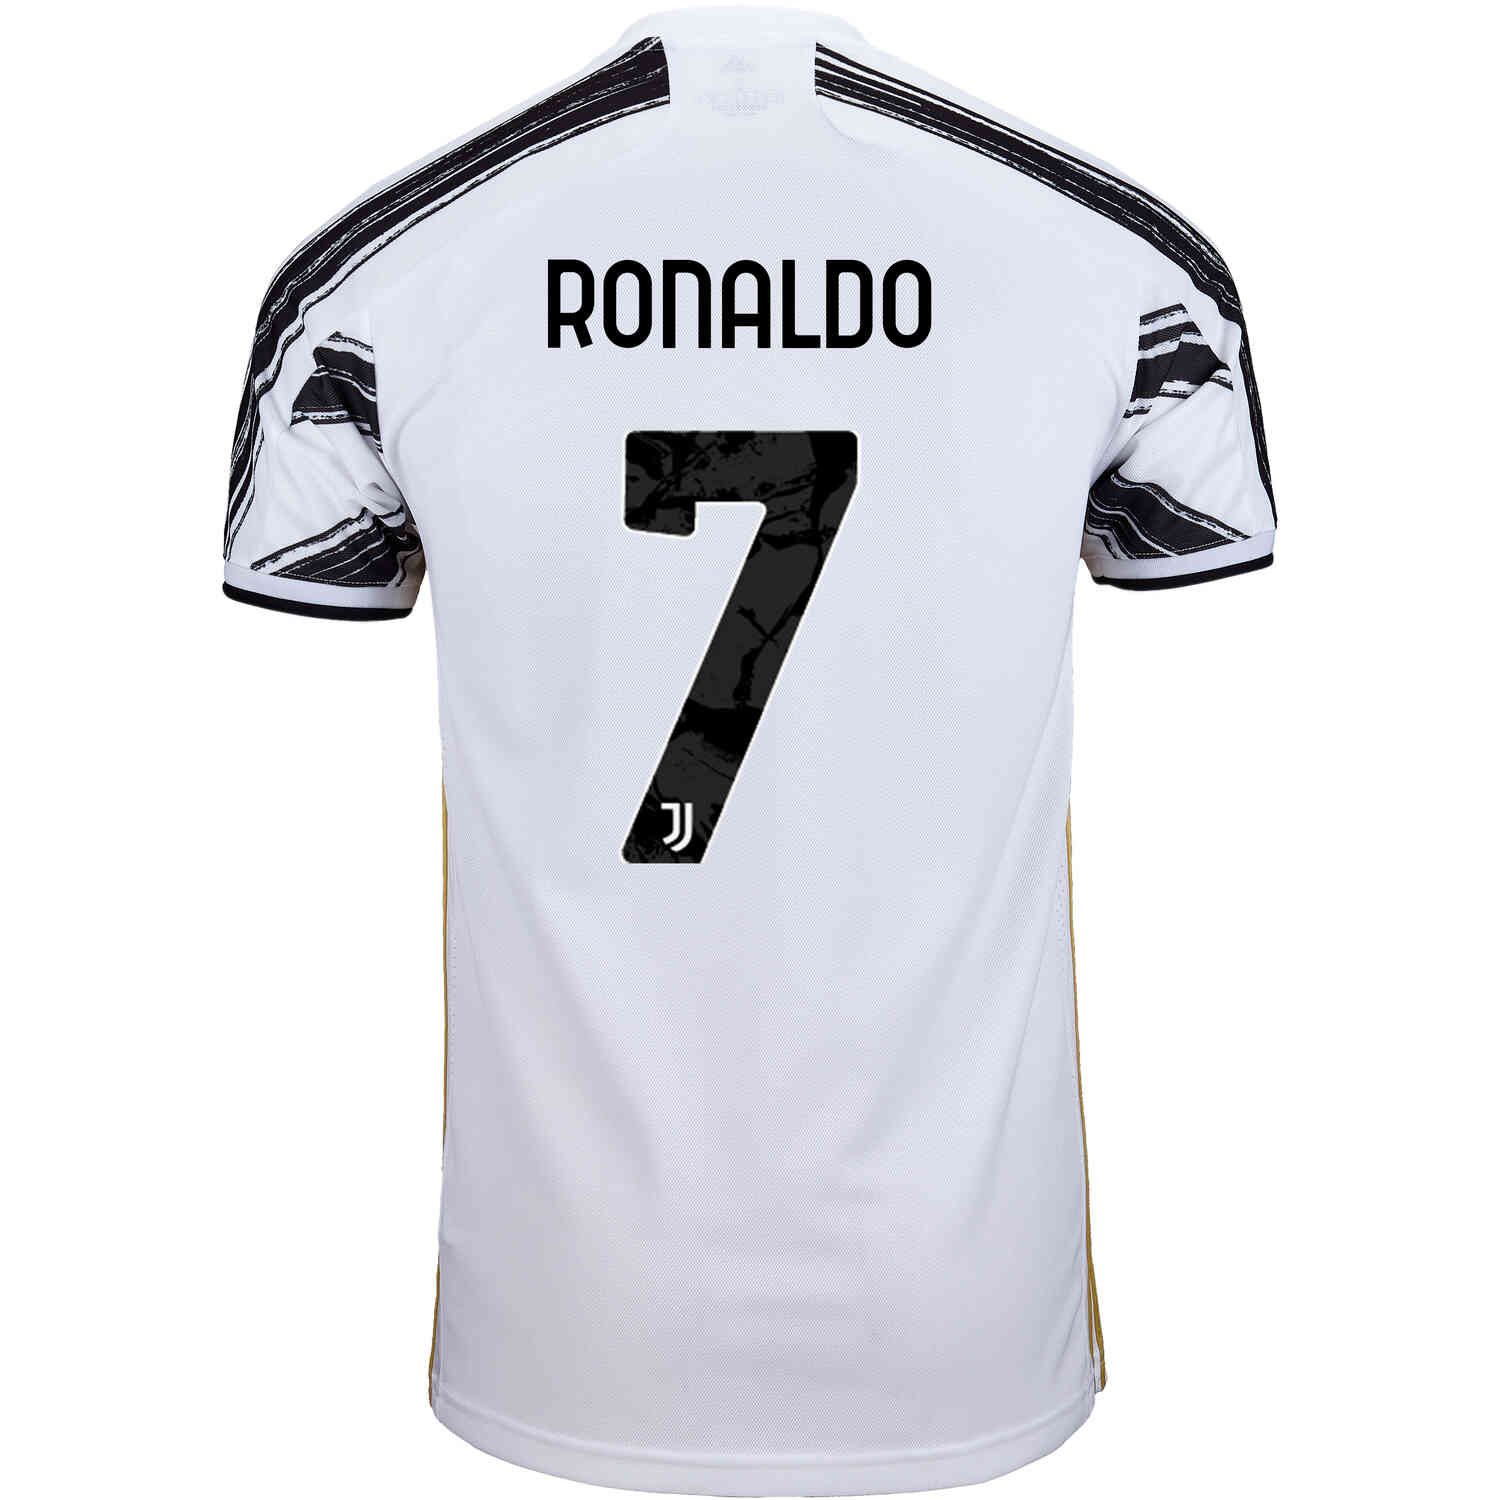 Juventus Fc Ronaldo Jersey : Football Juventus Men's Jersey Online Sale